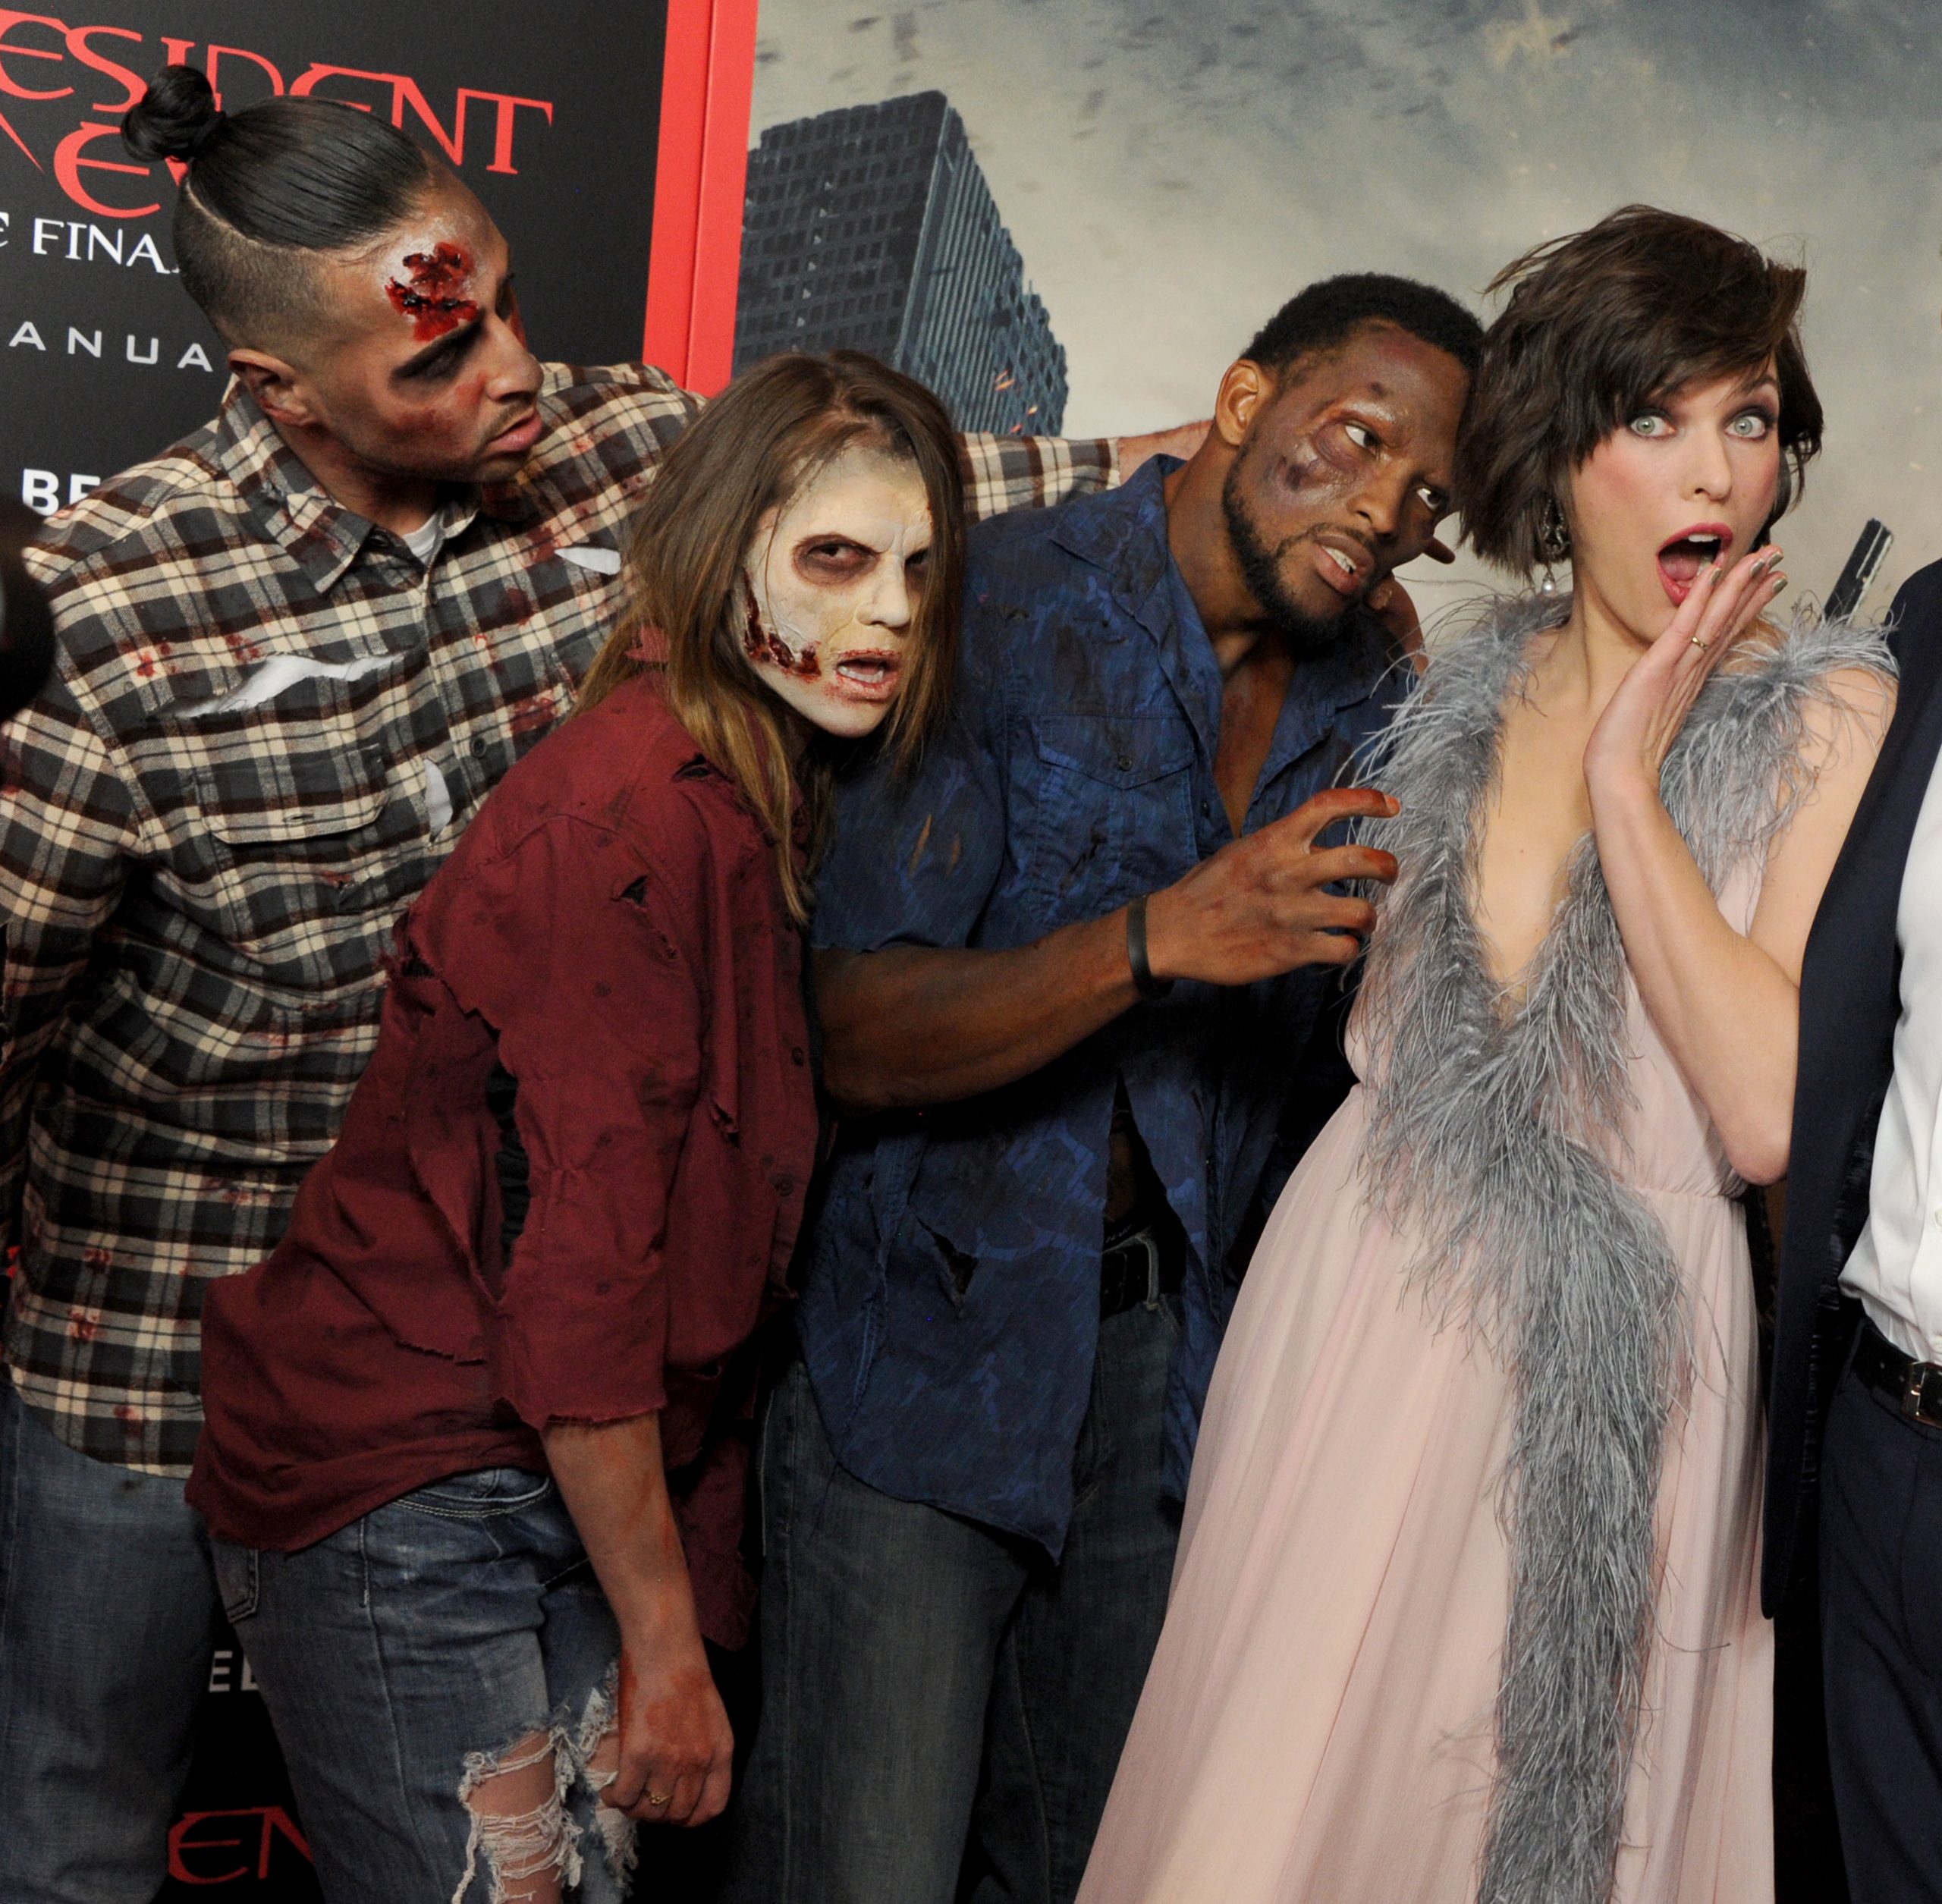 ¡Ay nanita! Netflix está trabajando en una serie live action de 'Resident Evil'